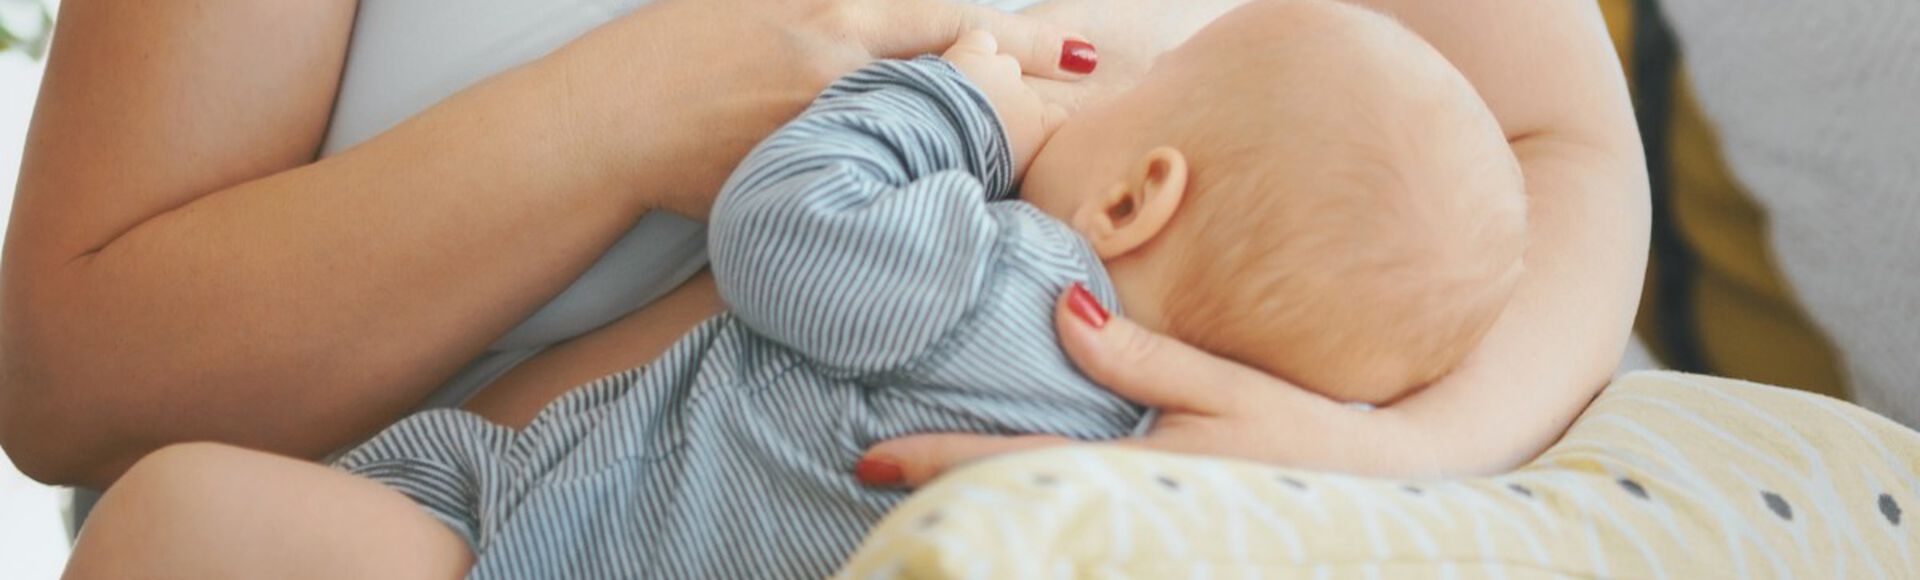 Mãe amamentando bebê posicionado sobre almofada de amamentação